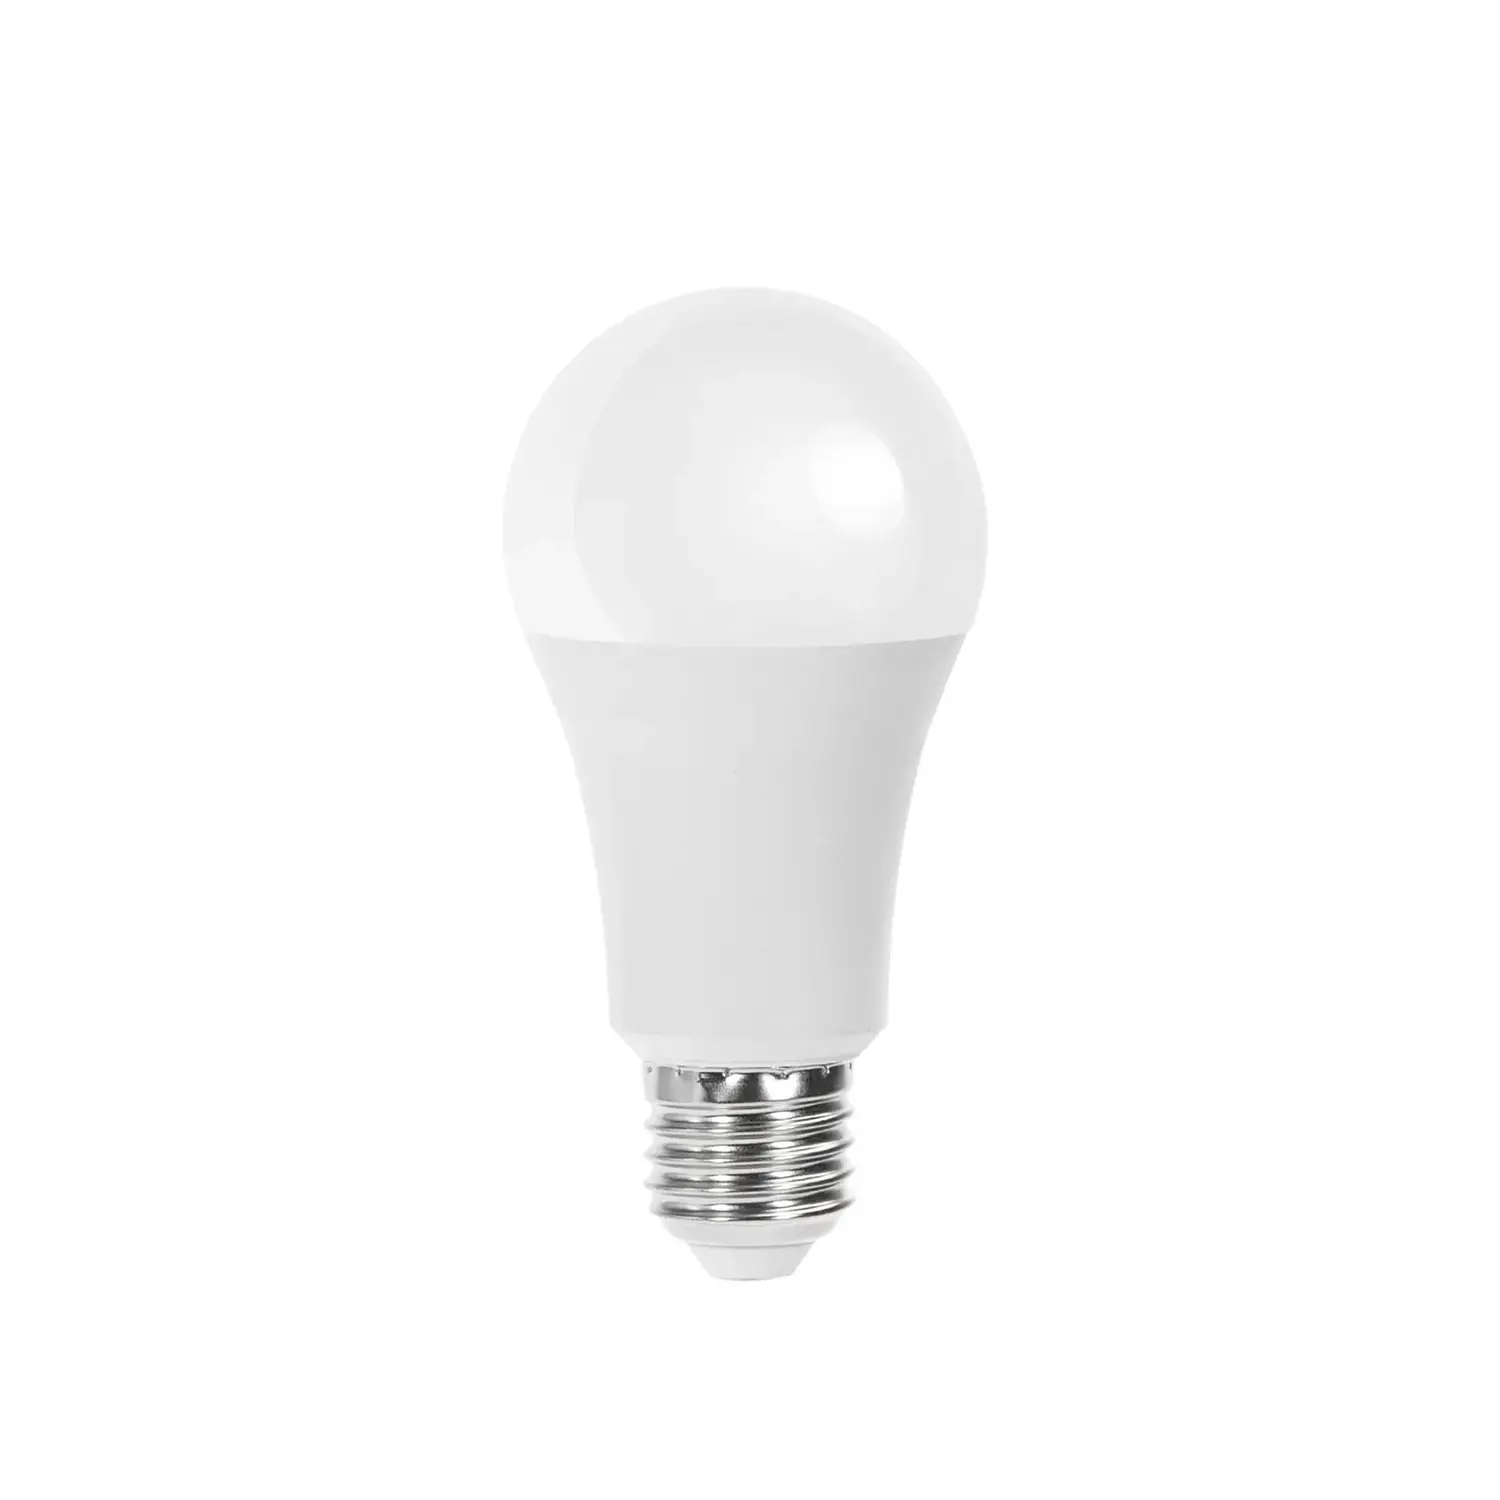 immagine del prodotto lampadina led A60 bulbo classico e27 21 watt bianco freddo